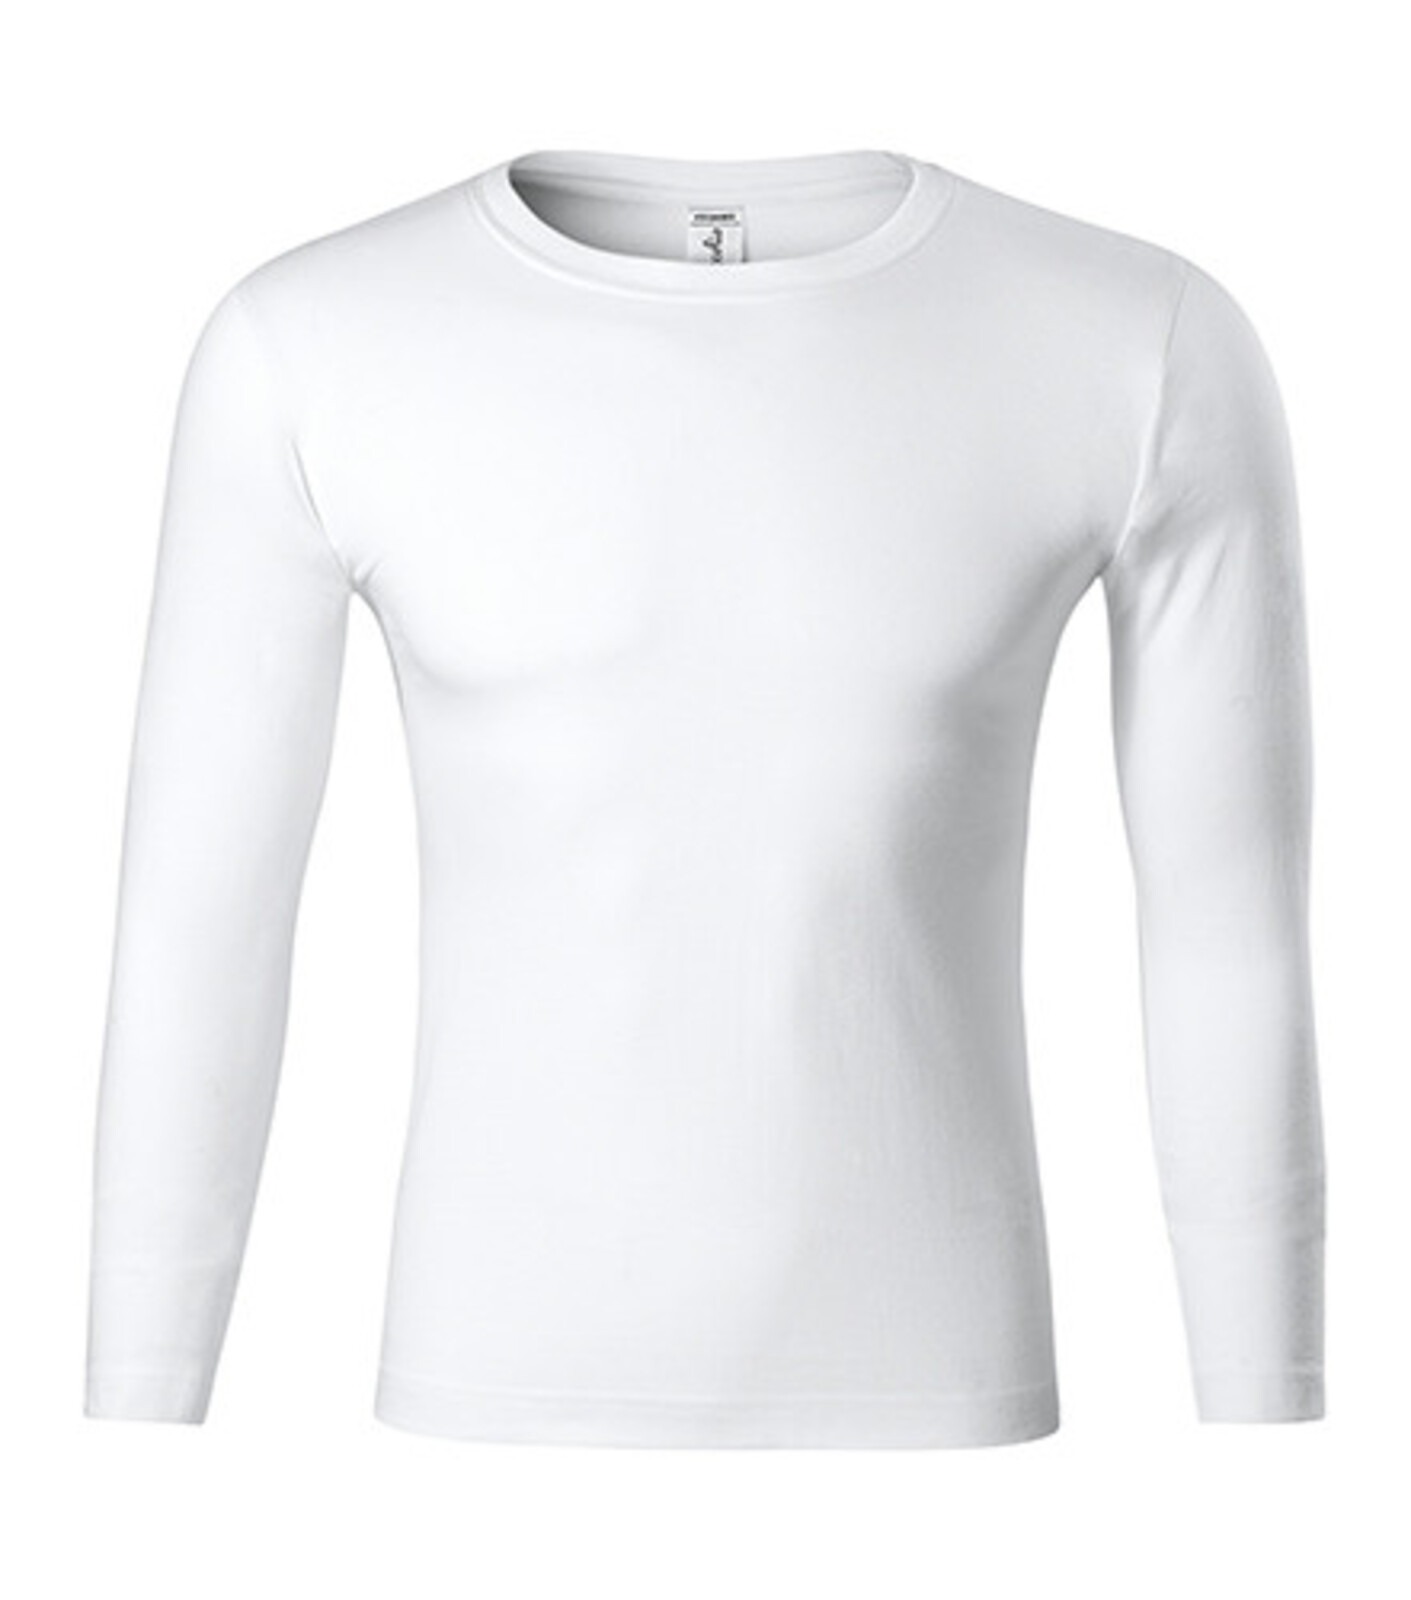 Unisex tričko s dlhým rukávom Progress LS P75 - veľkosť: M, farba: biela